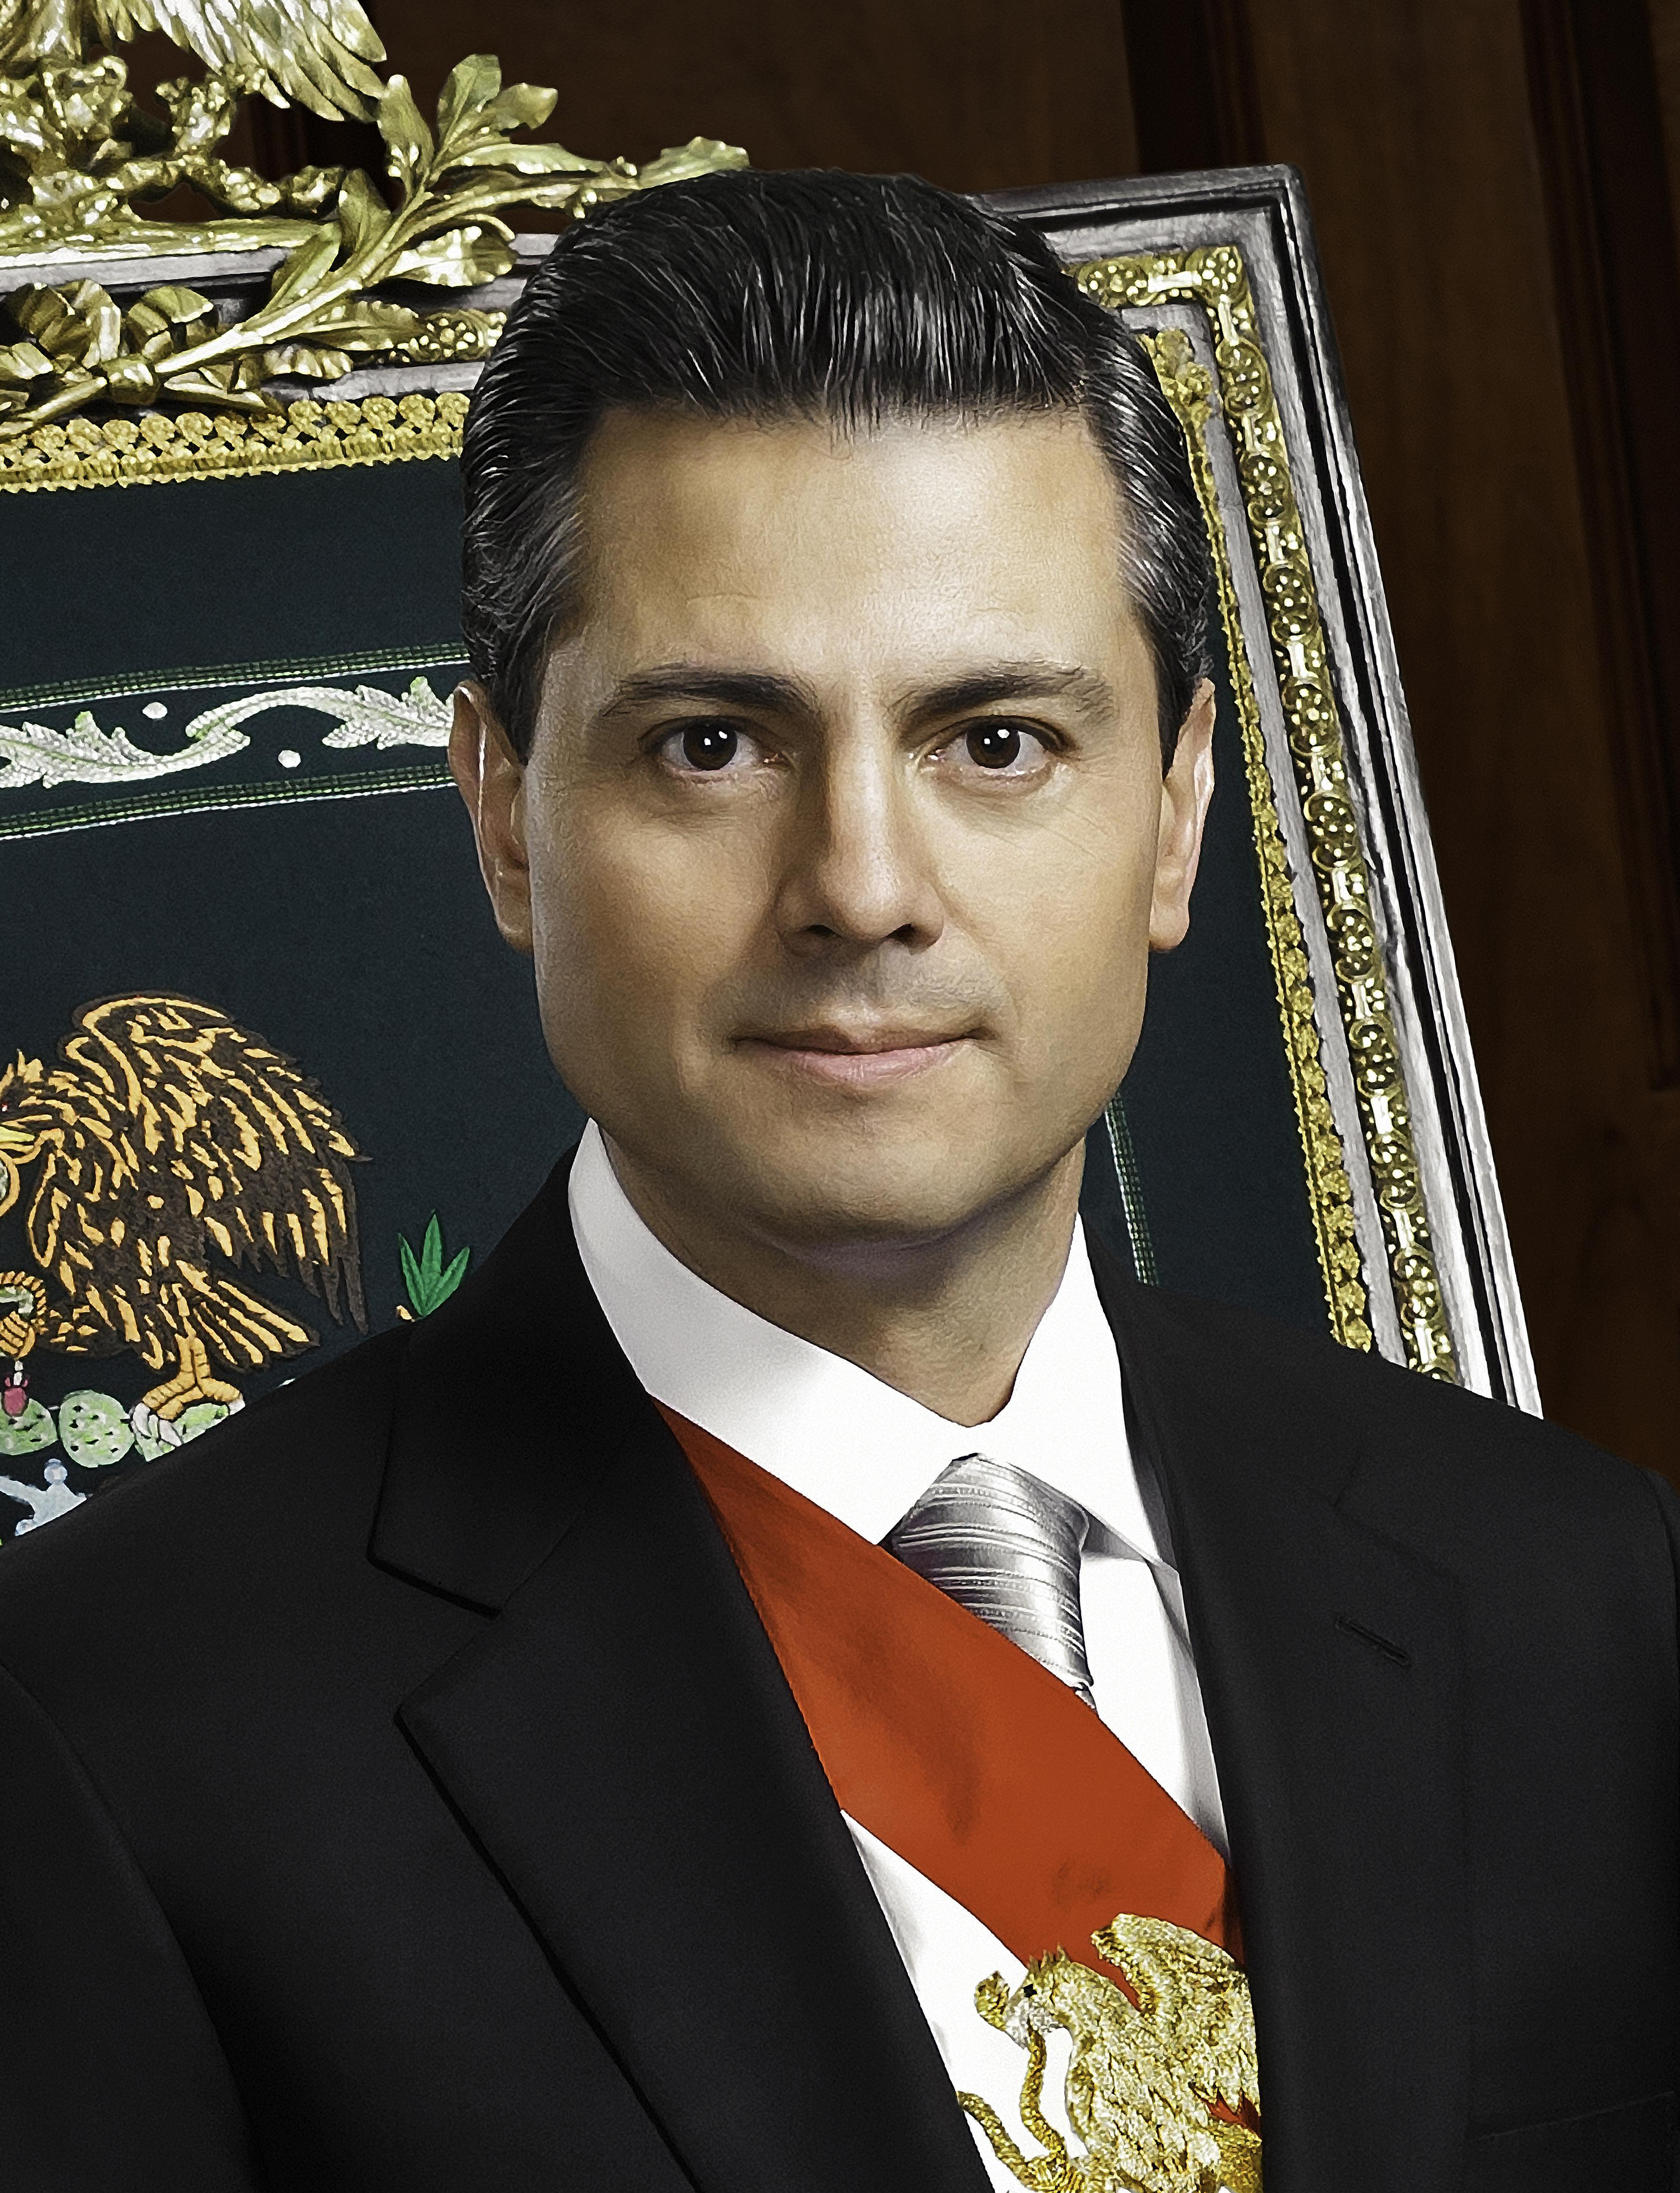 Luis Estevez - Deputy City Administrator, Public Services and